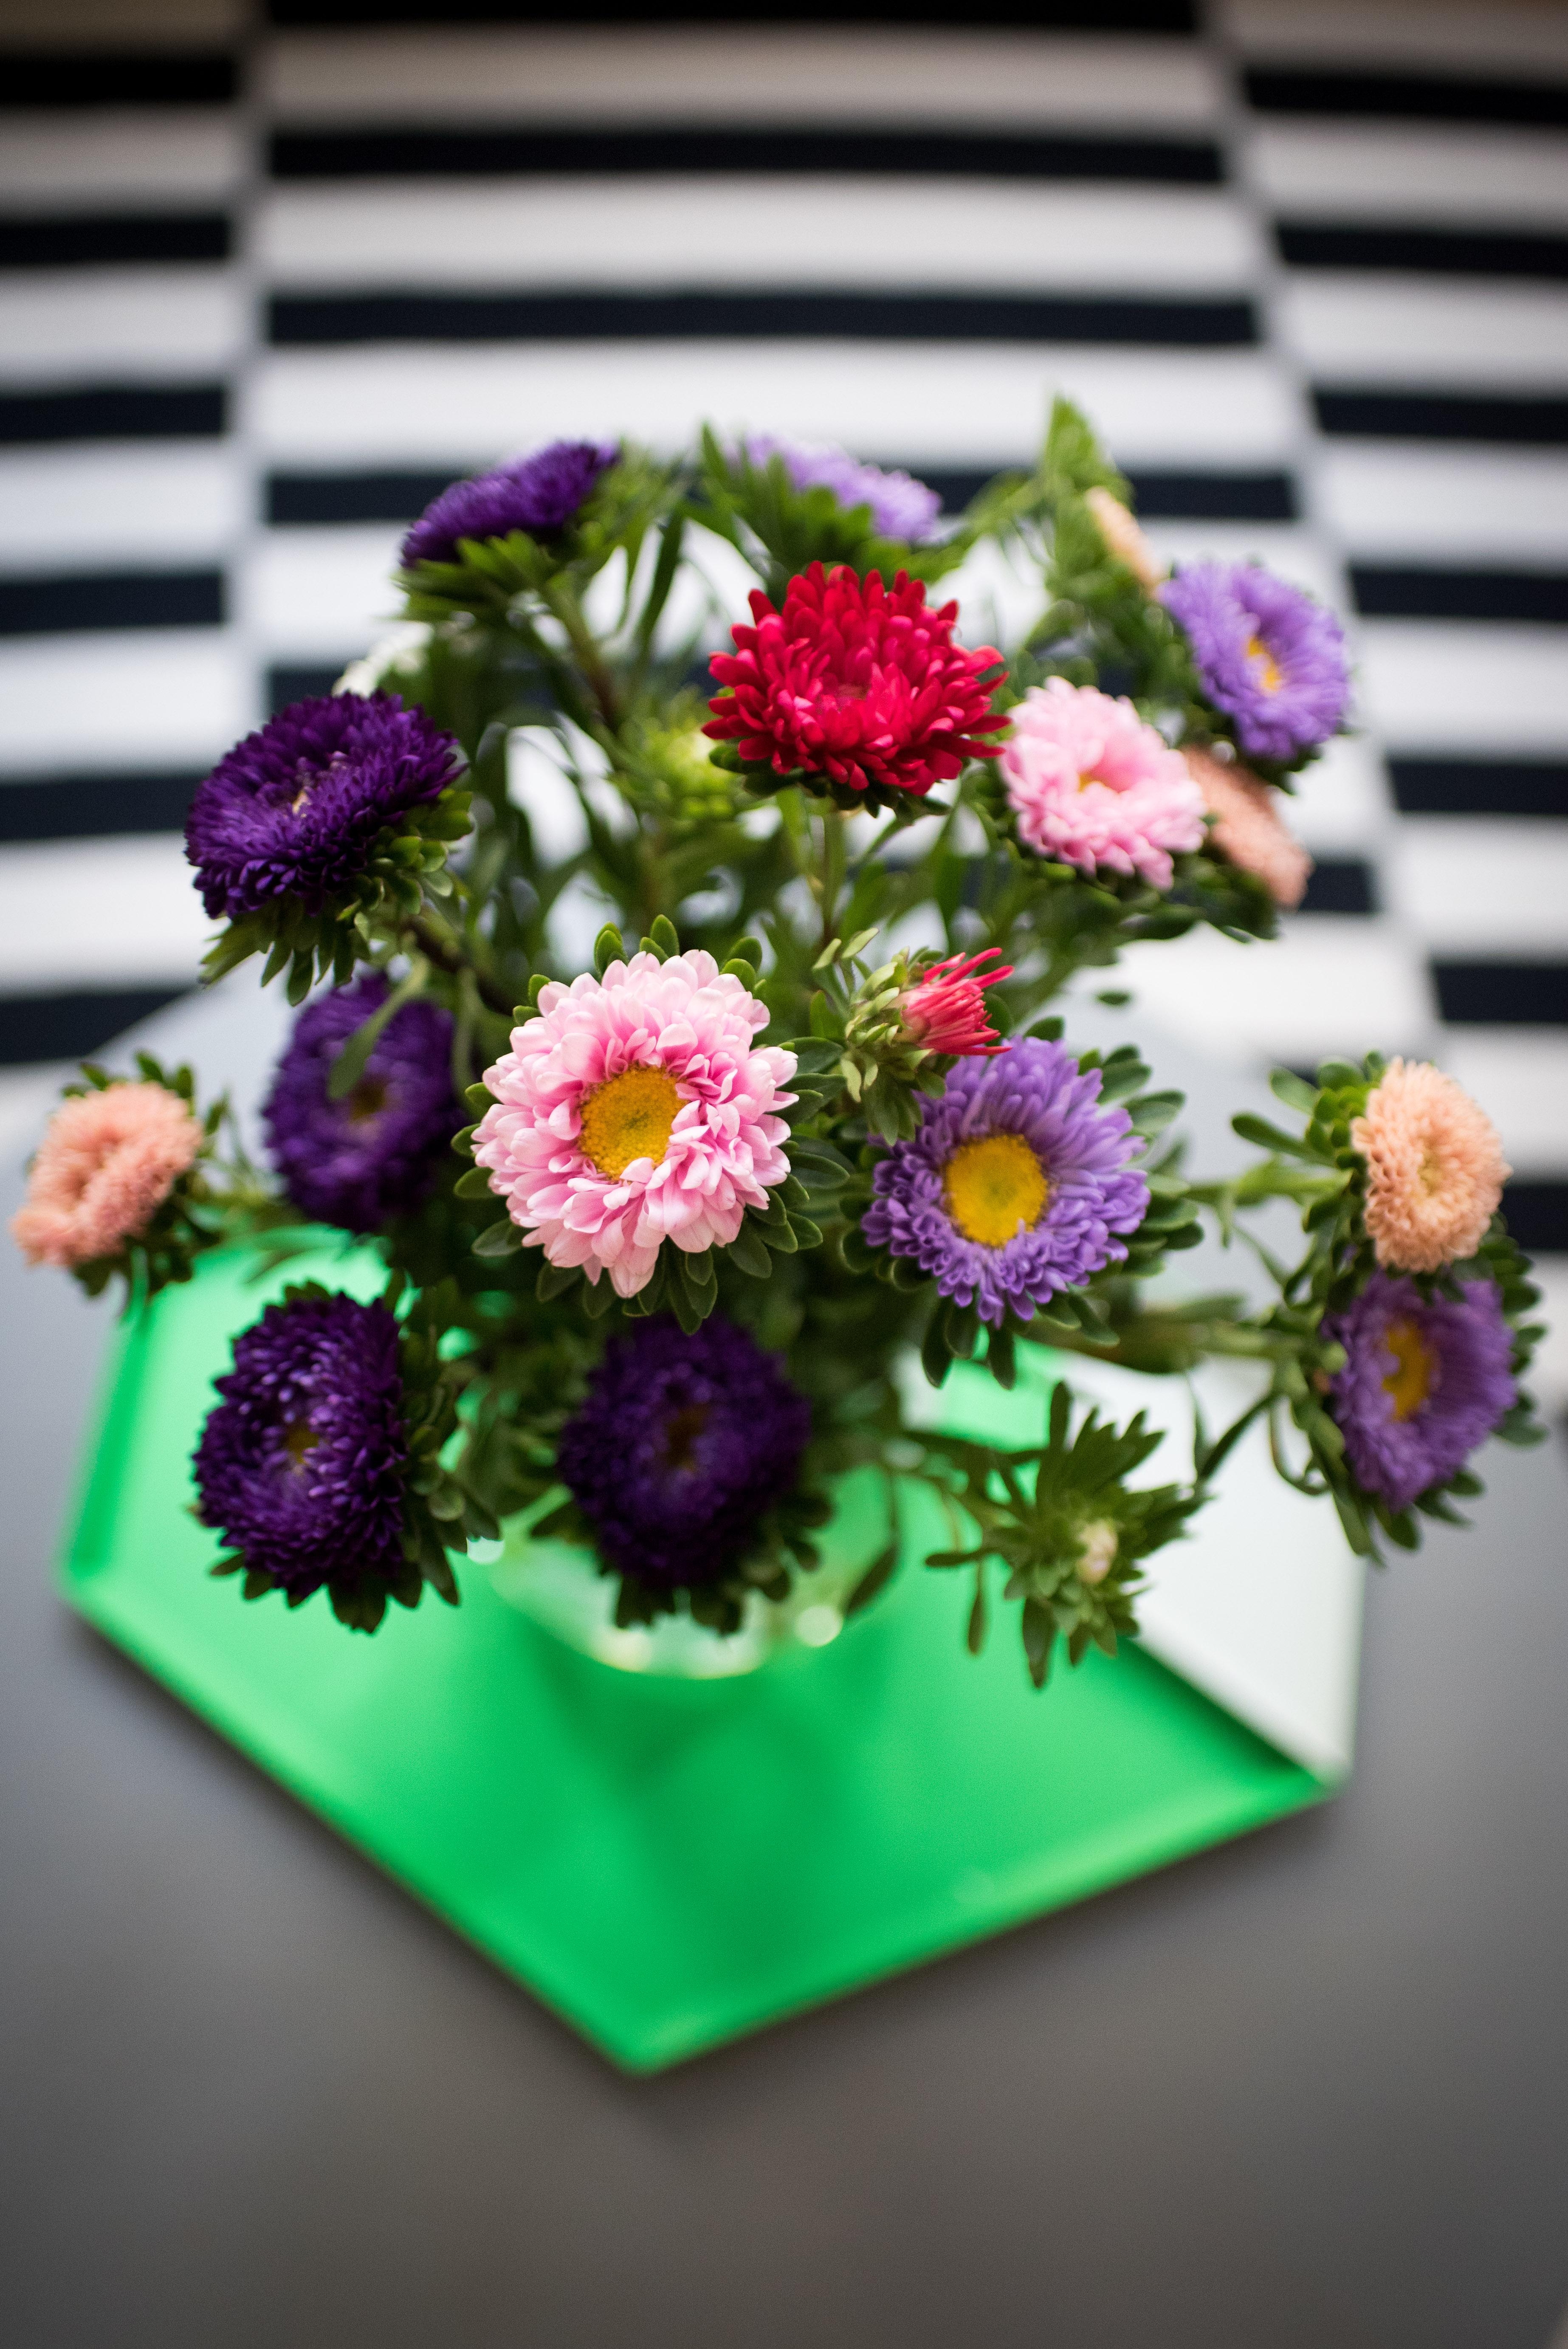 Fridayflowers - Habt ein schönes Wochenende!
#freshflowers #flowerfriday #colorsplash